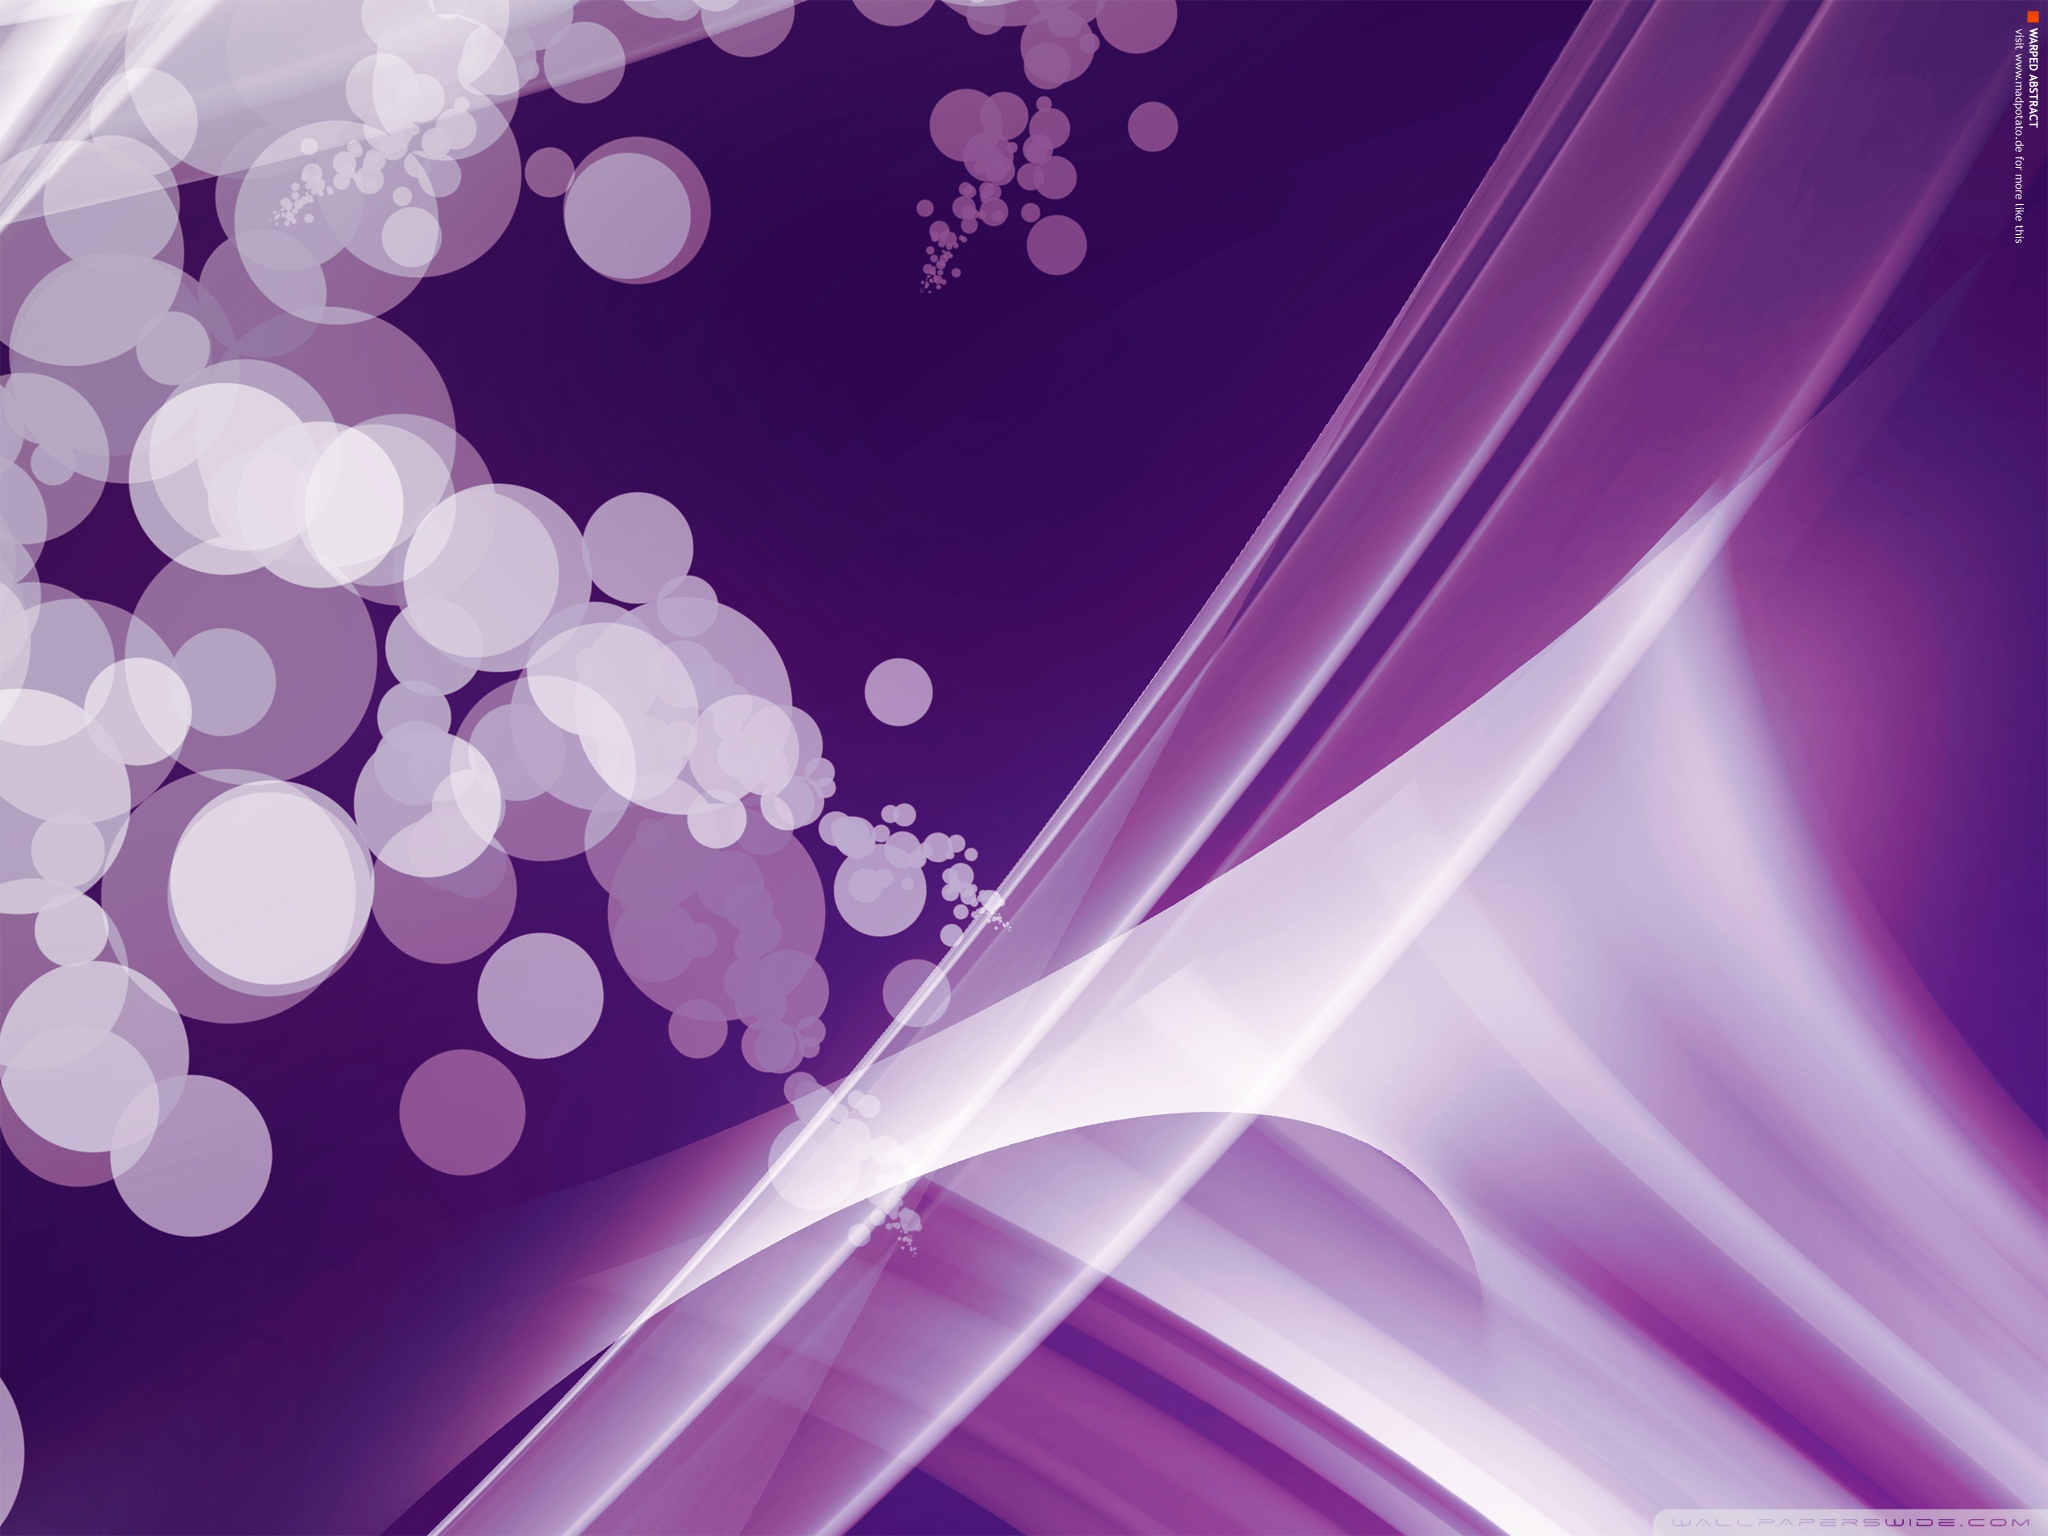 Hyperdimension Neptunia Purple Heart X Male Reader - HD Wallpaper 